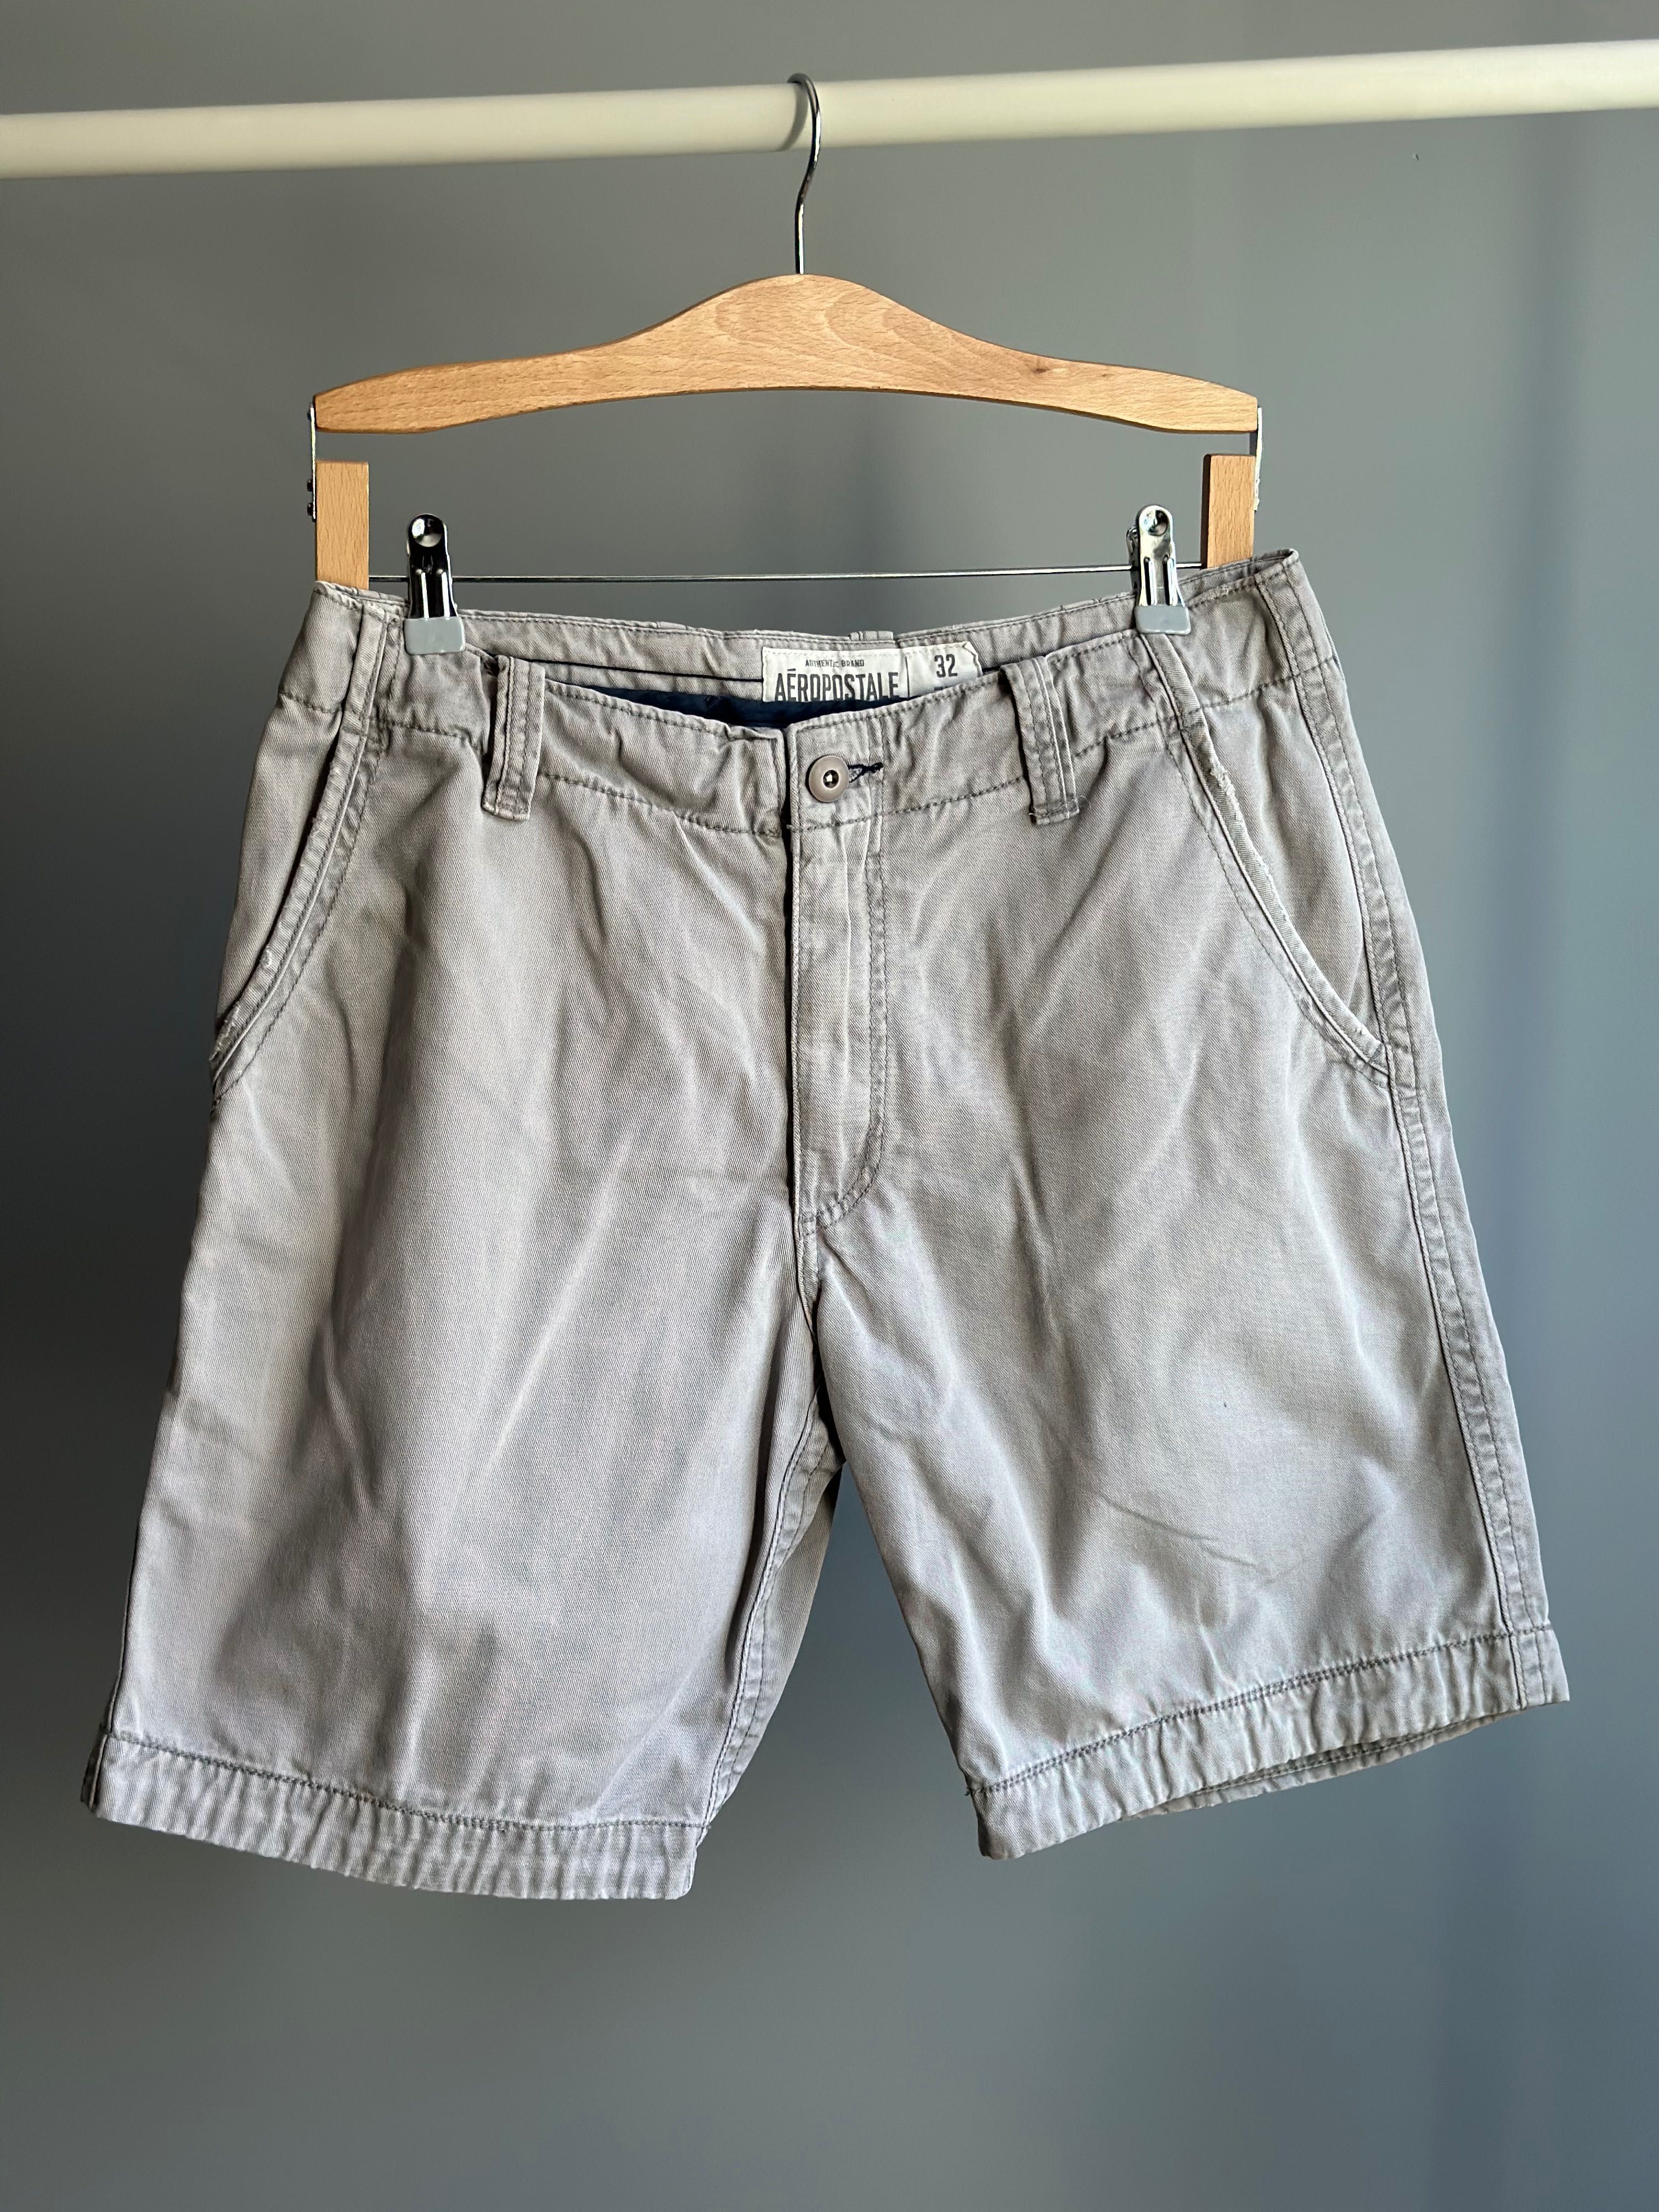 Szare dżinsowe jeansy krótkie spodenki, Aeropostale, rozmiar XL 42 32